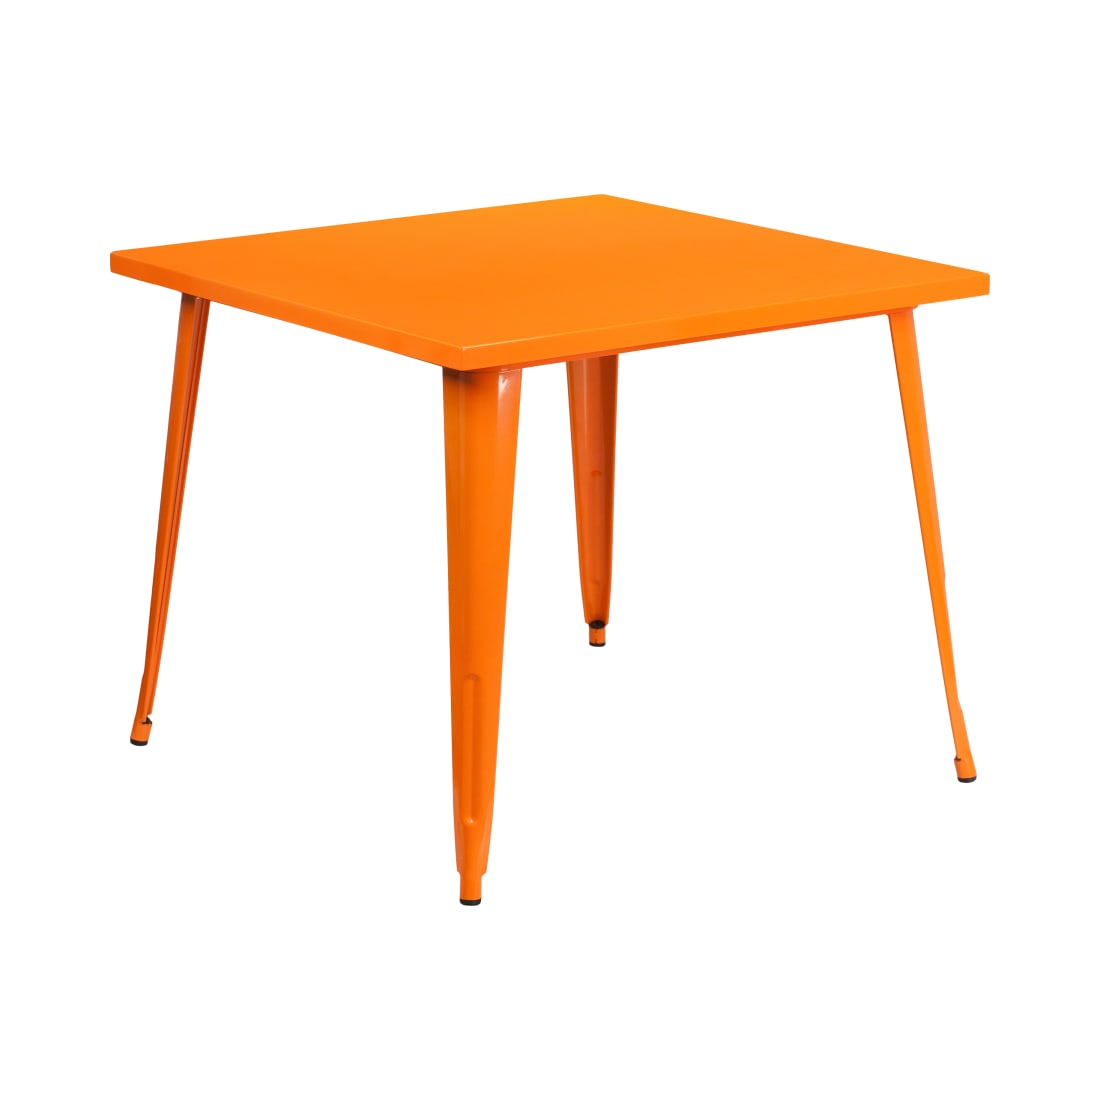 35.5” Square Orange Metal Indoor-Outdoor Table